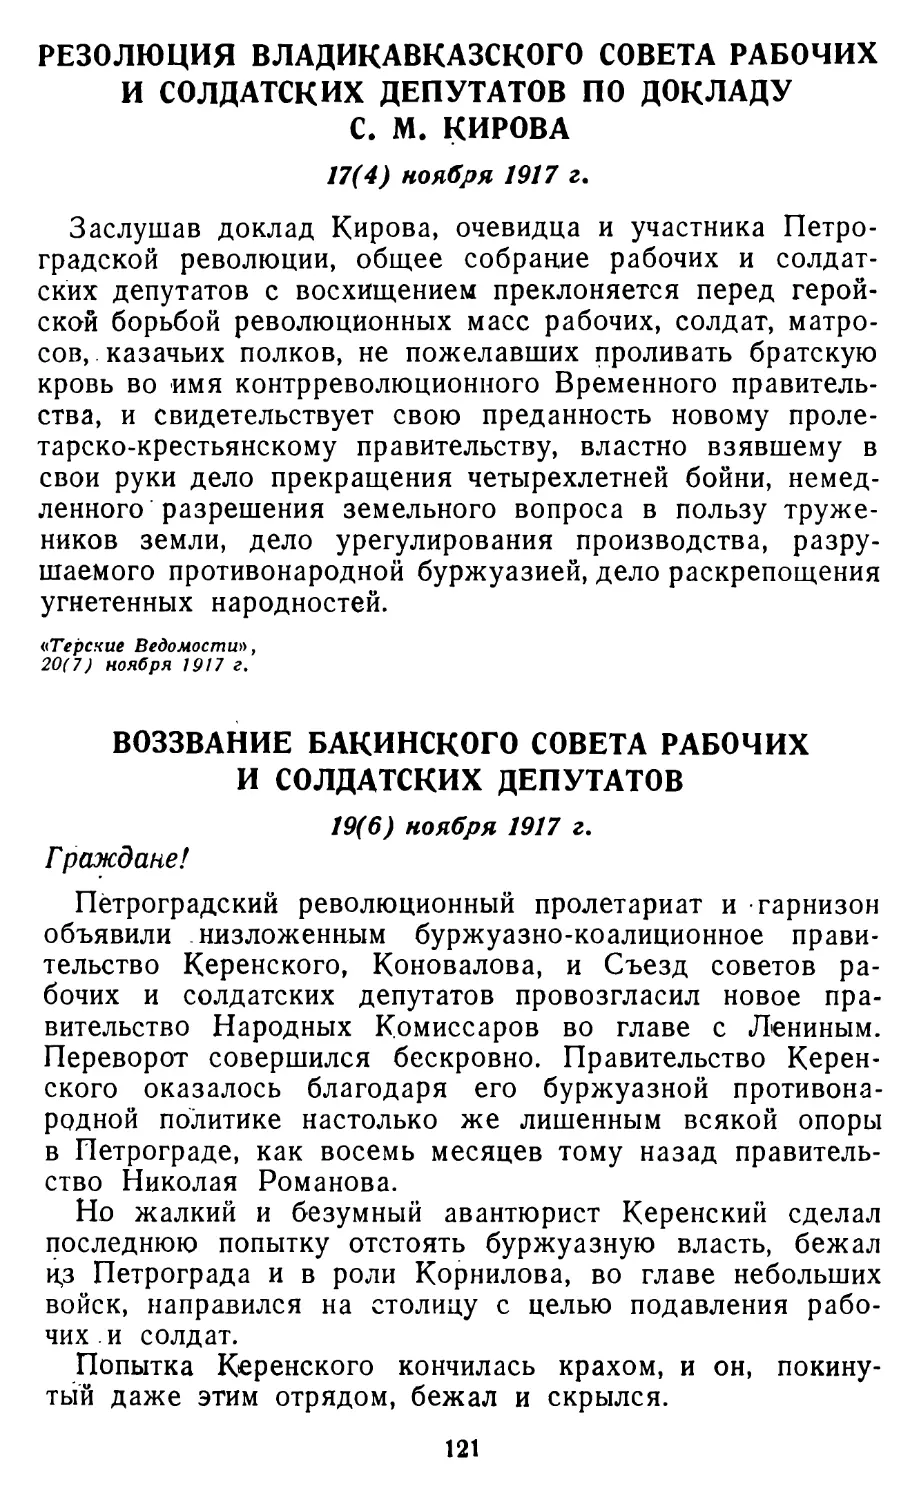 Резолюция Владикавказского Совета рабочих и солдатских депутатов по докладу С. М. Кирова